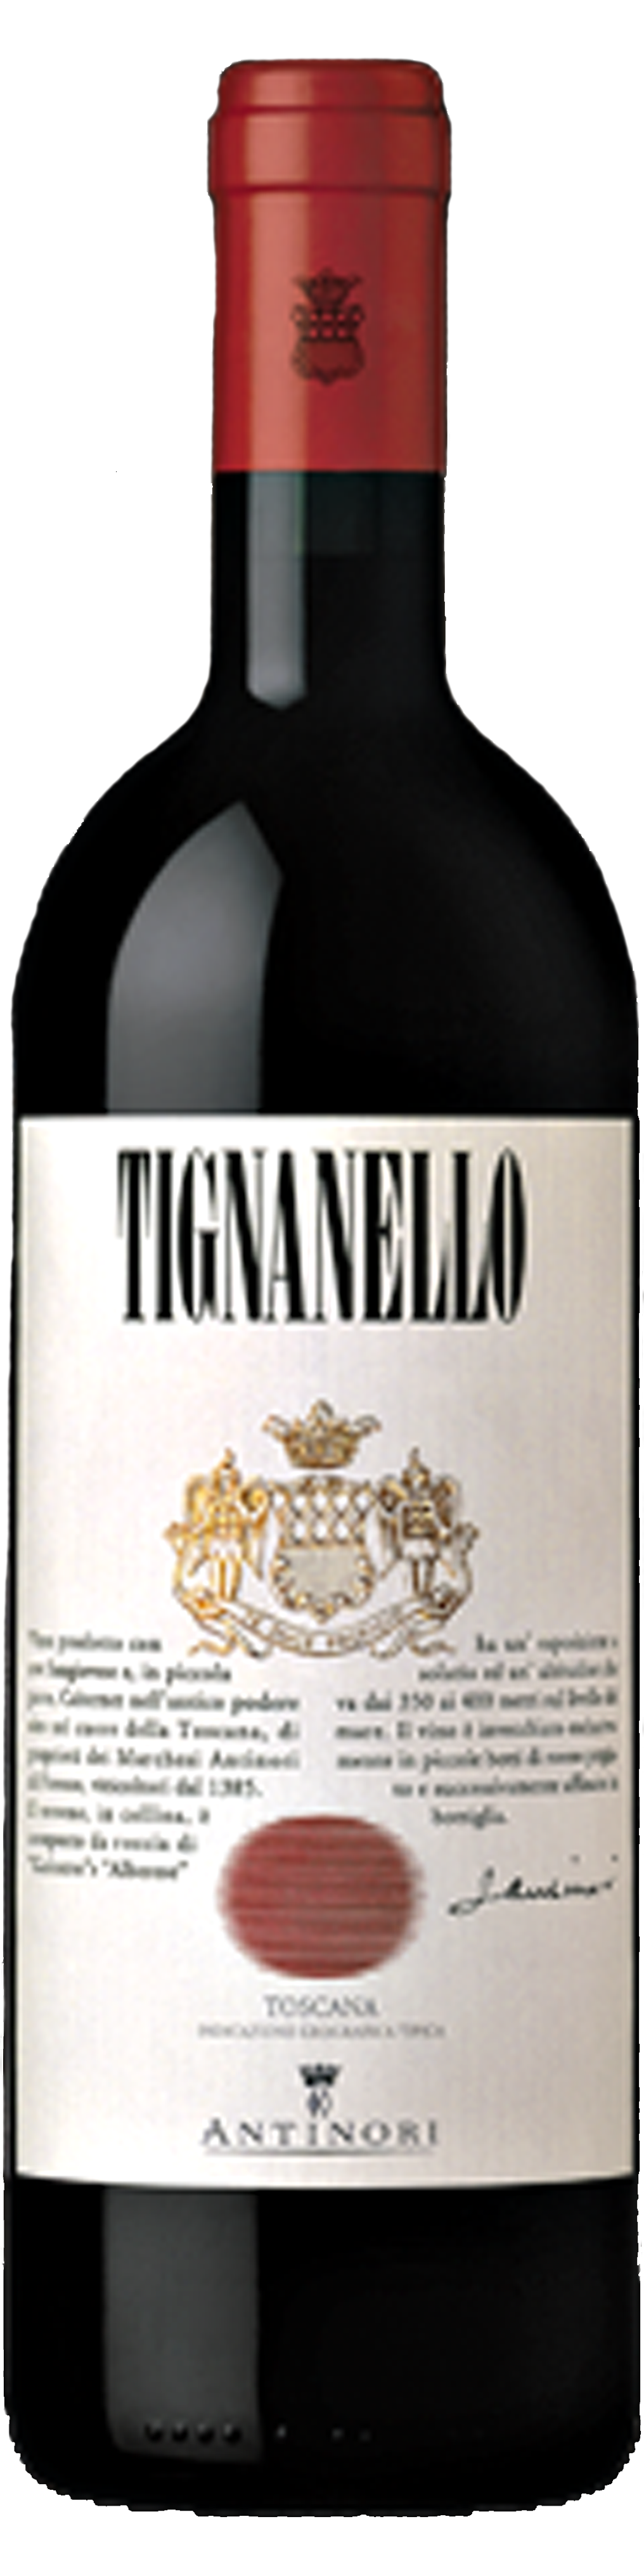 Bottle shot of 2007 Tignanello